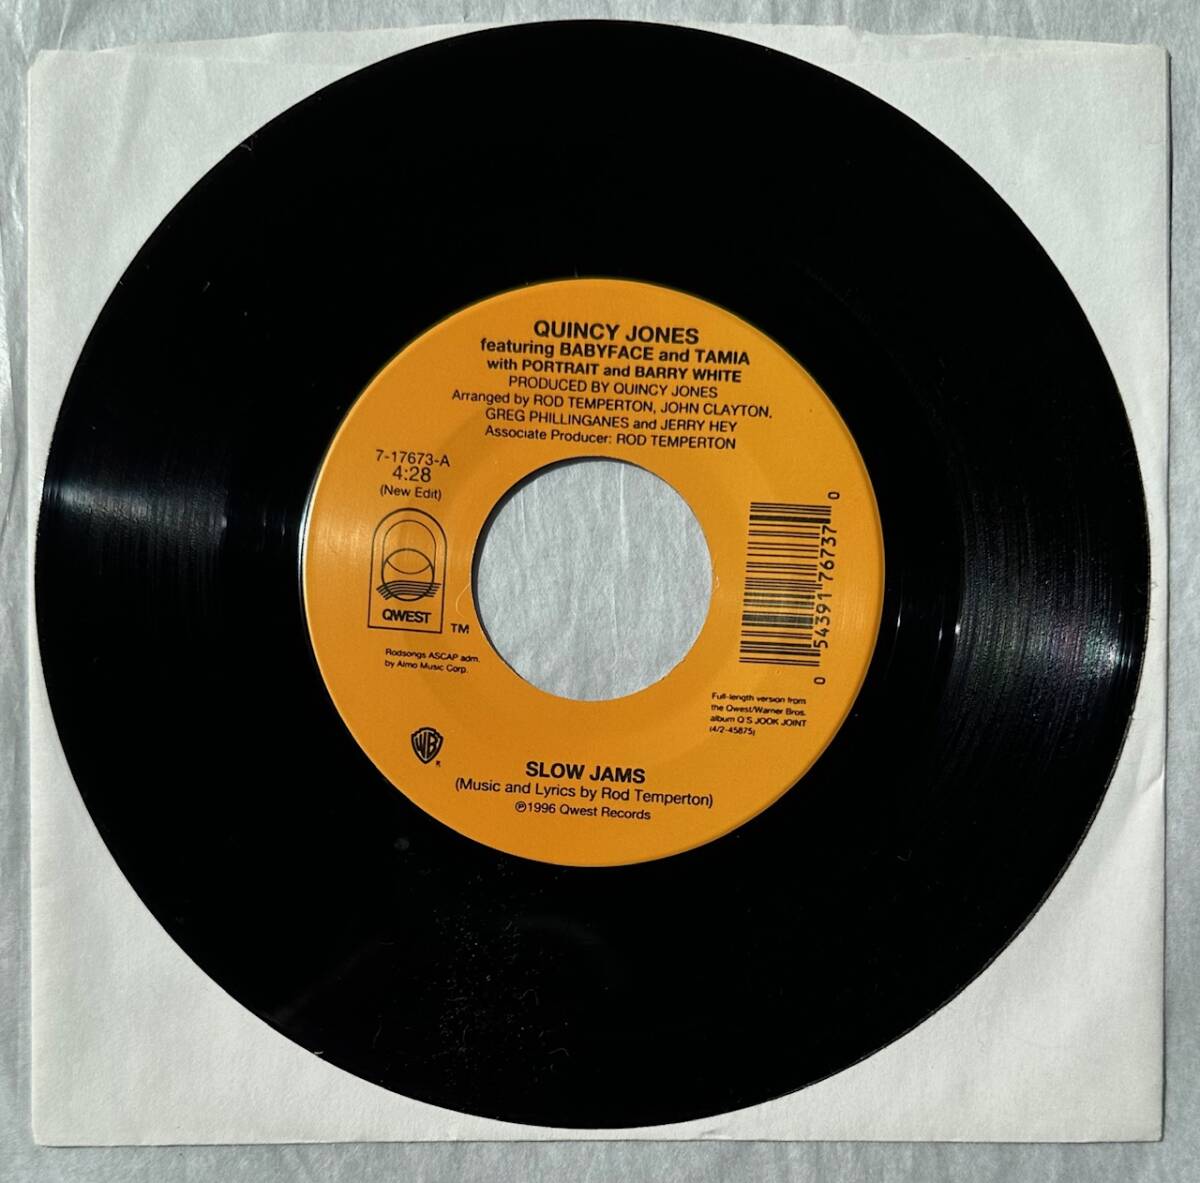 ■1996年 オリジナル US盤 Quincy Jones feat. Babyface and Tamia - Slow Jams 7”EP 7-17673 Qwest Records_画像1